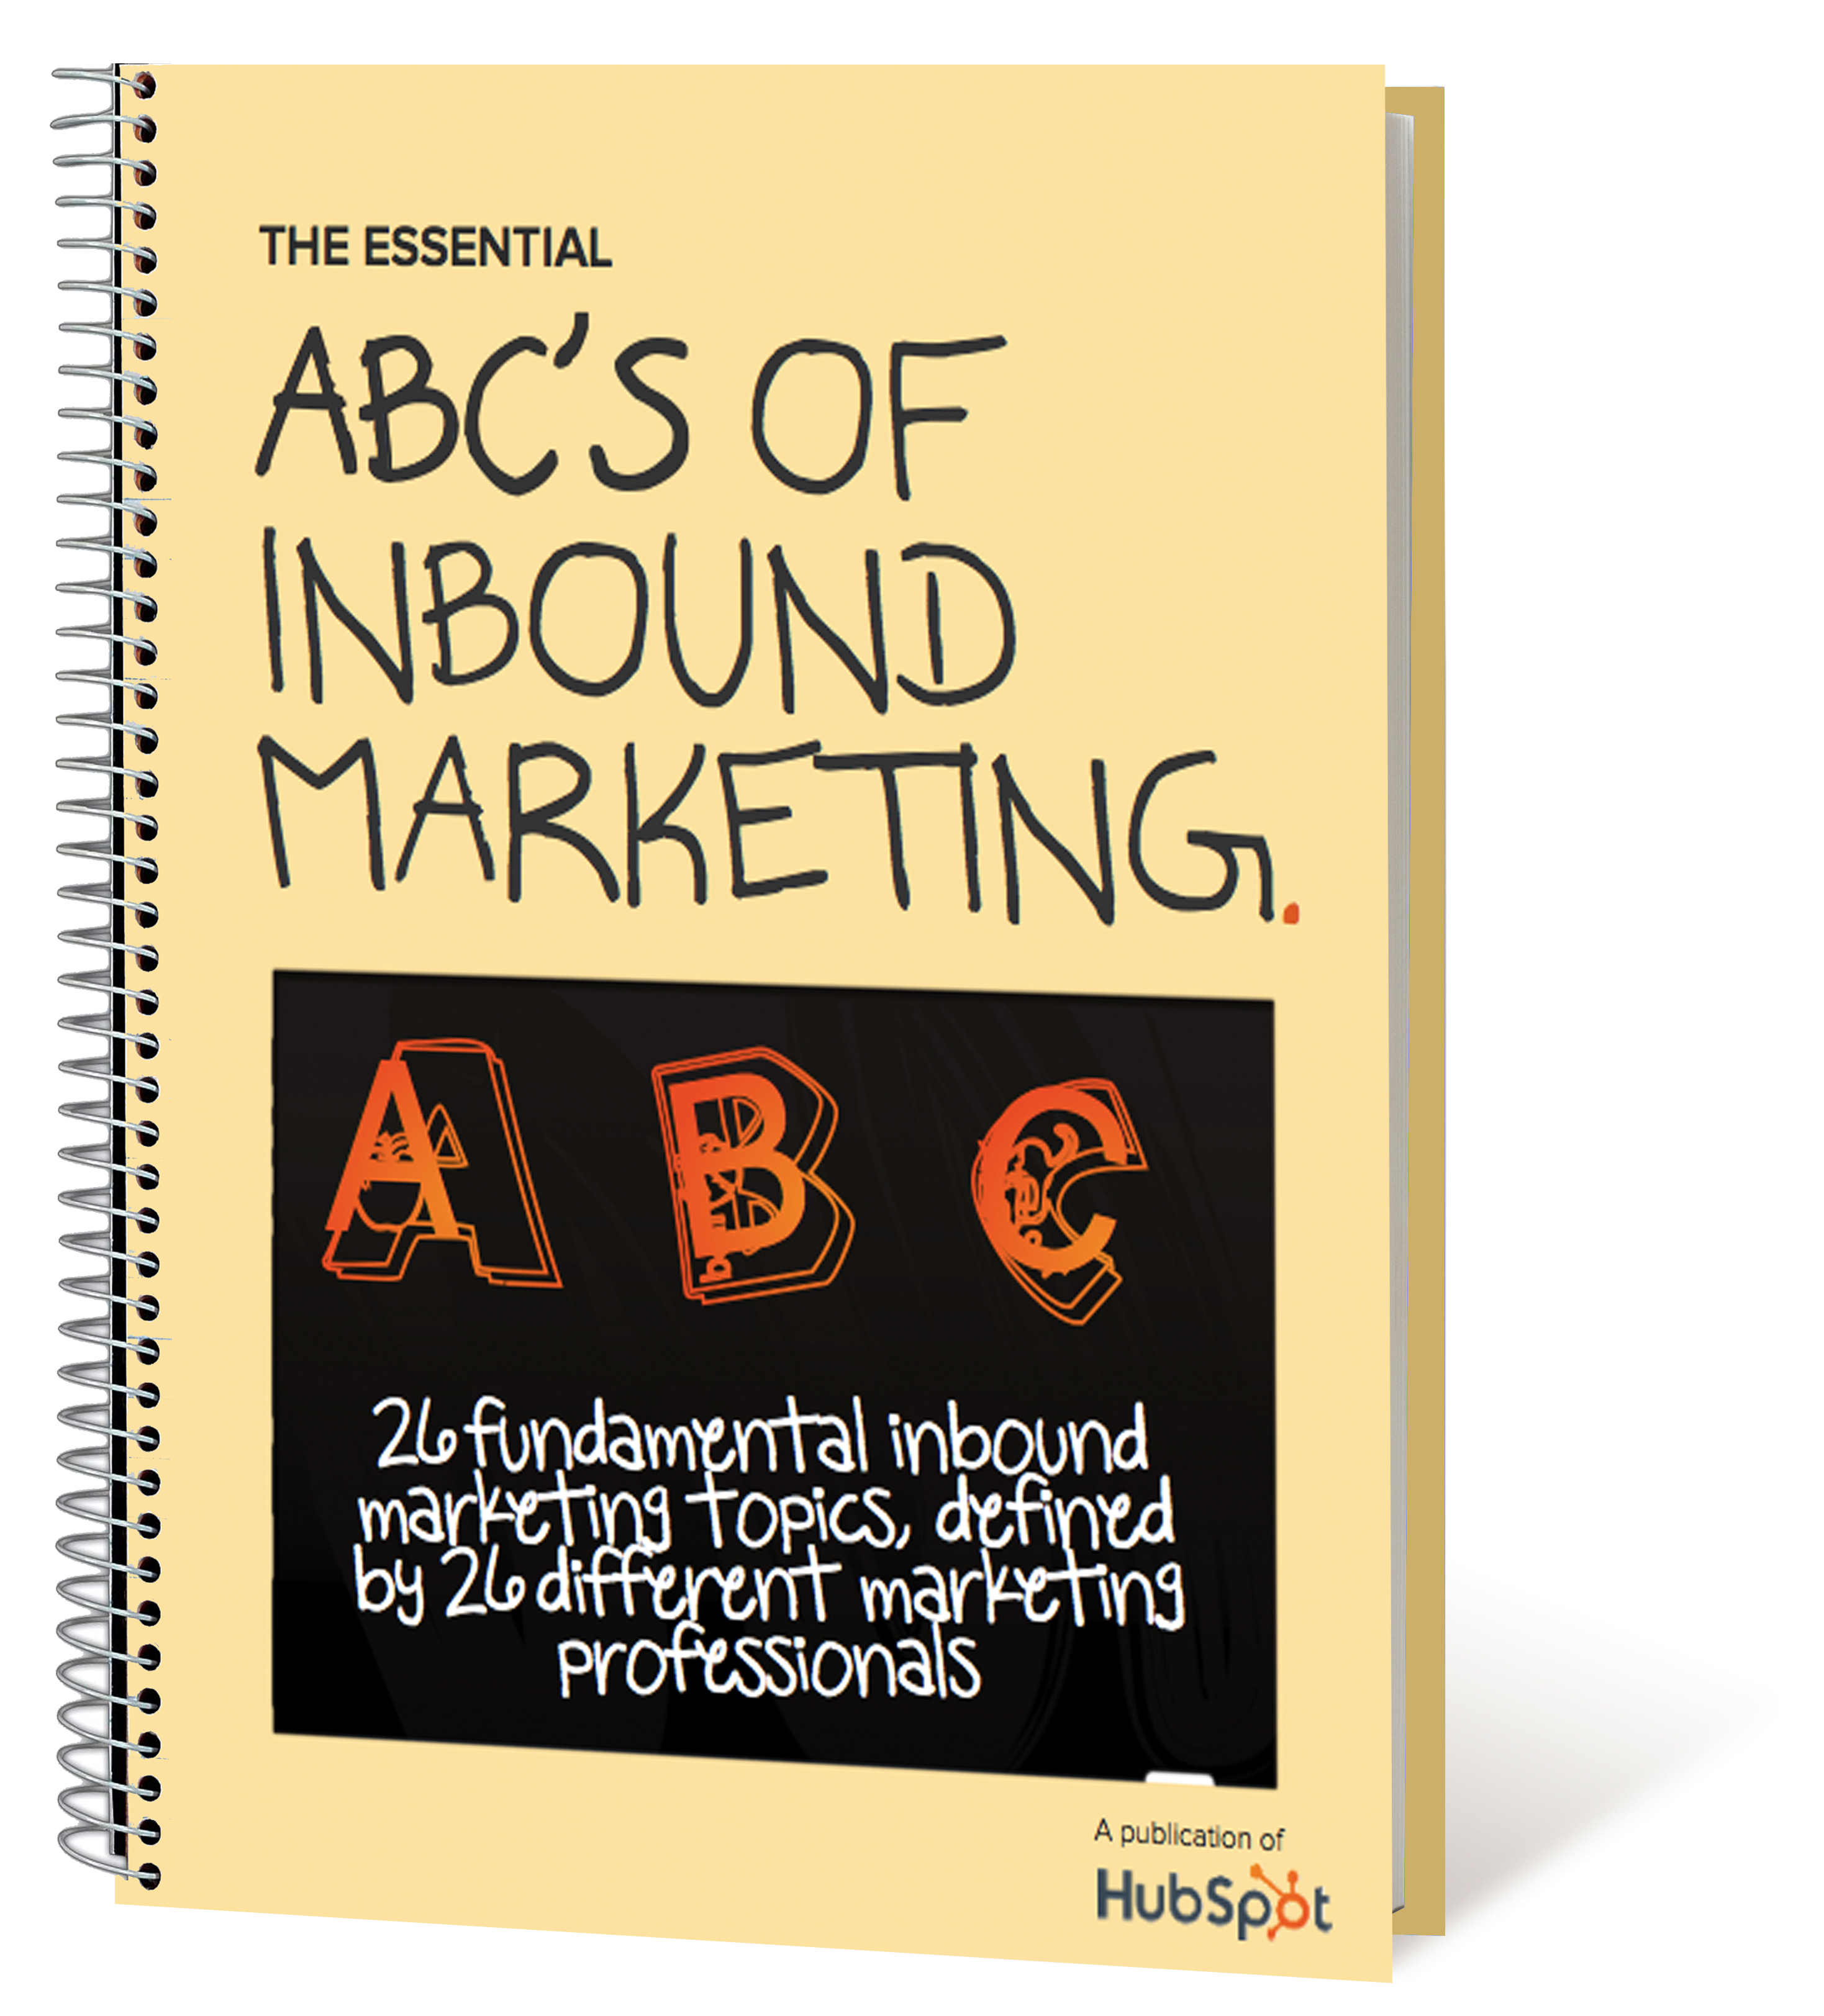 abcs_of_inbound_marketing